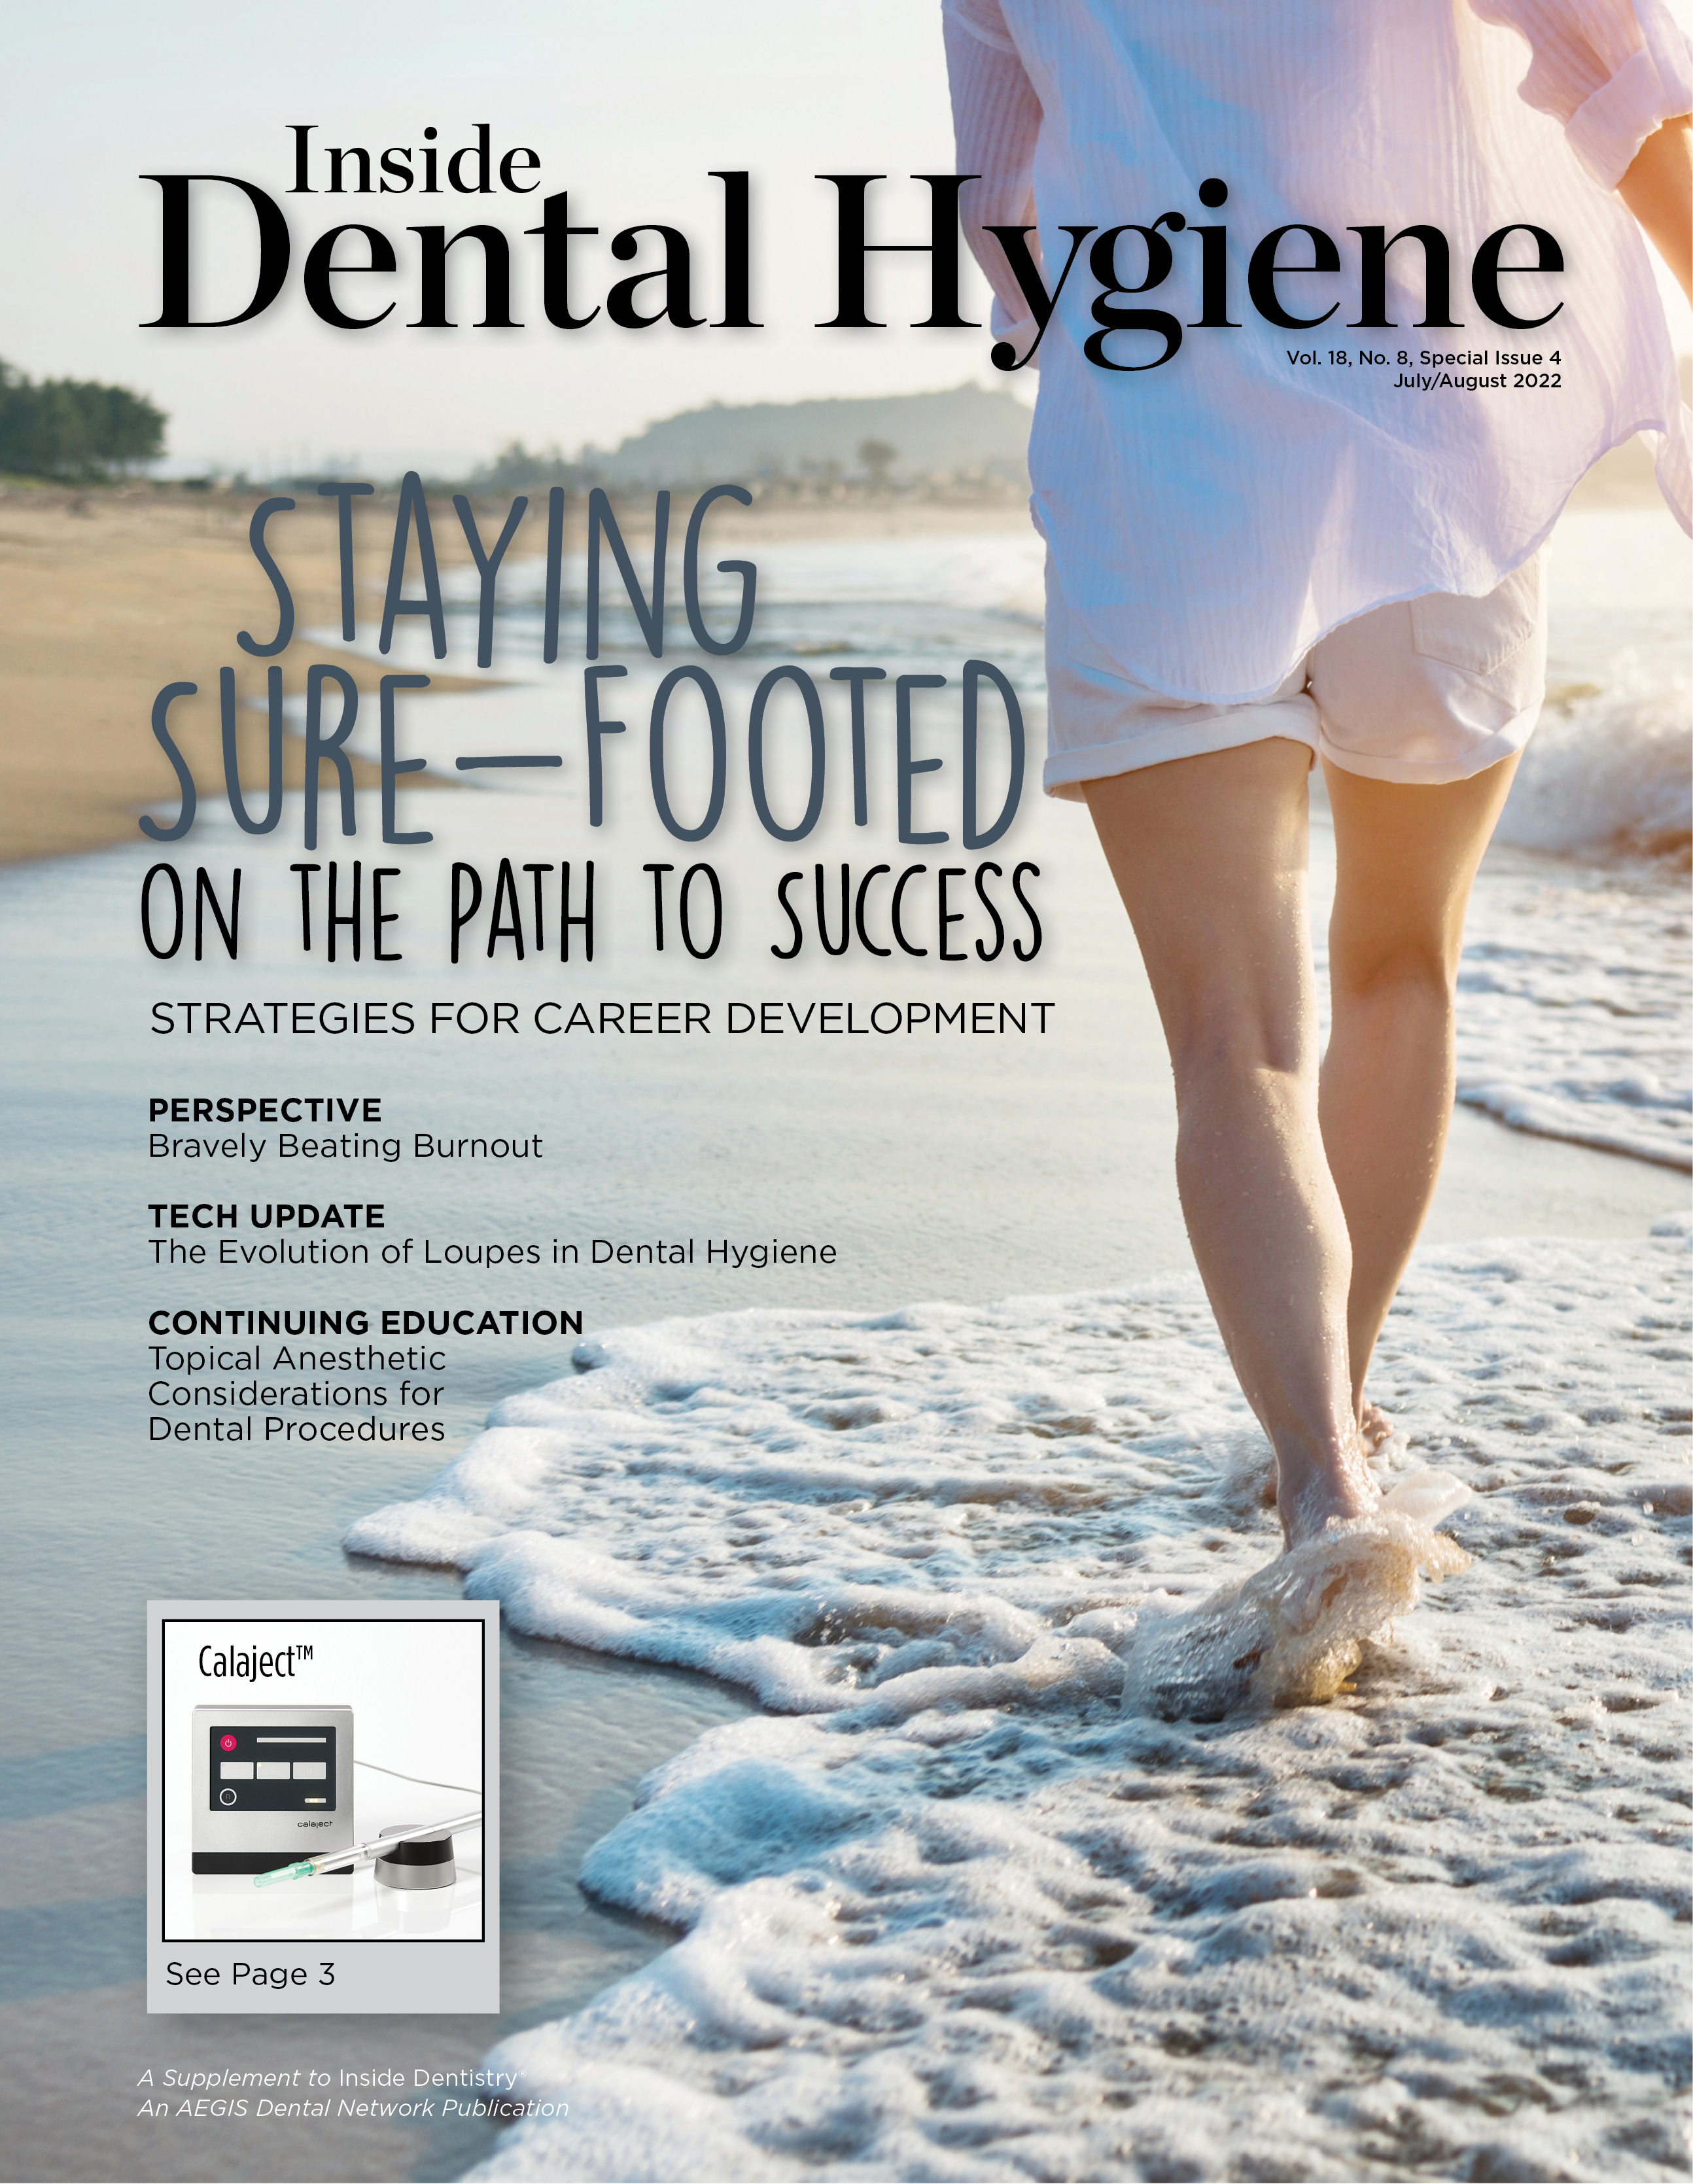 Inside Dental Hygiene August 2022 Cover